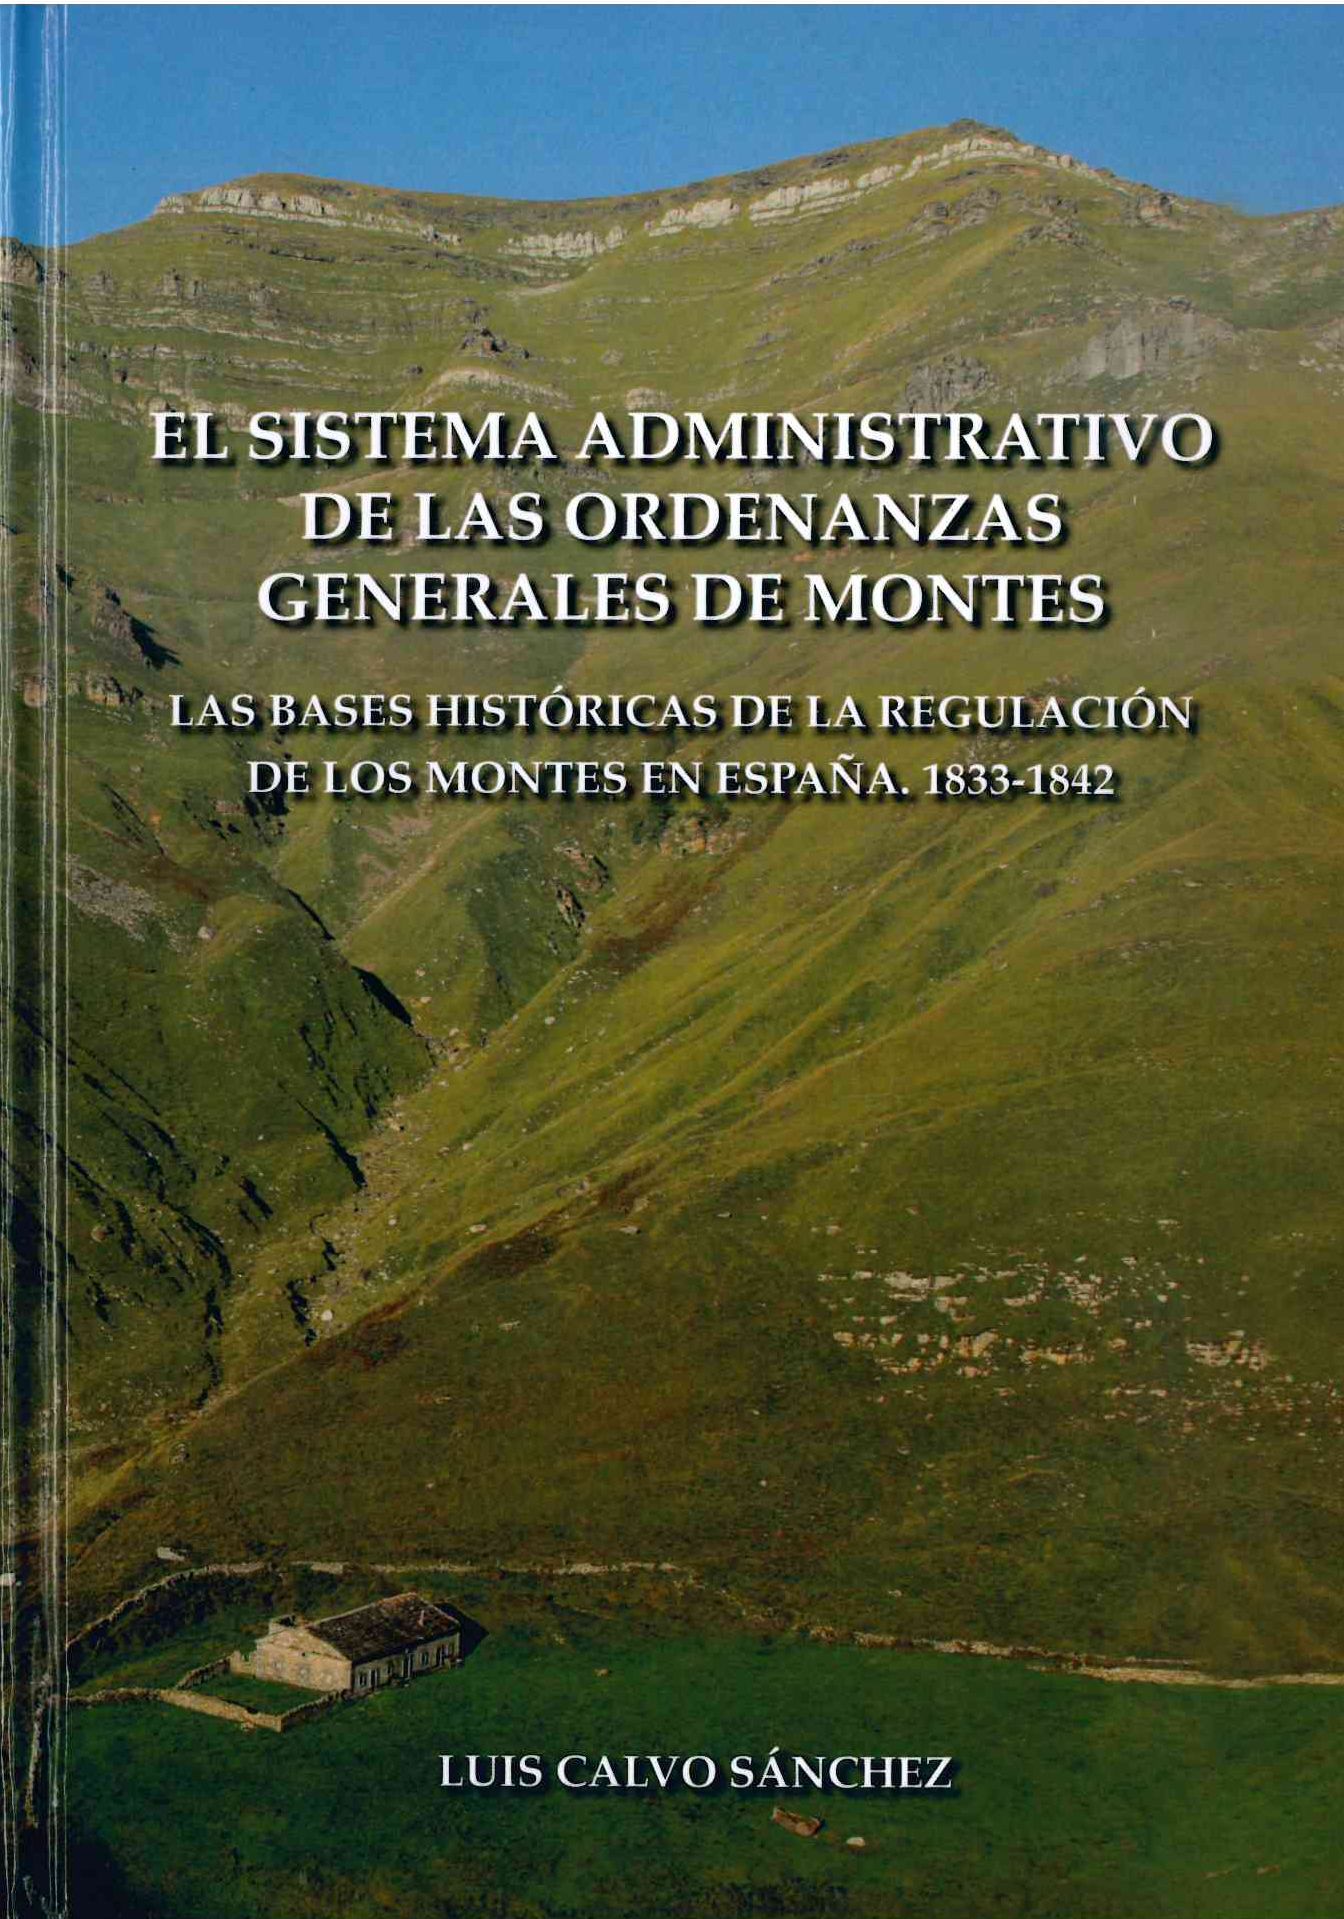 Imagen de portada del libro El sistema administrativo de las ordenanzas generales de montes